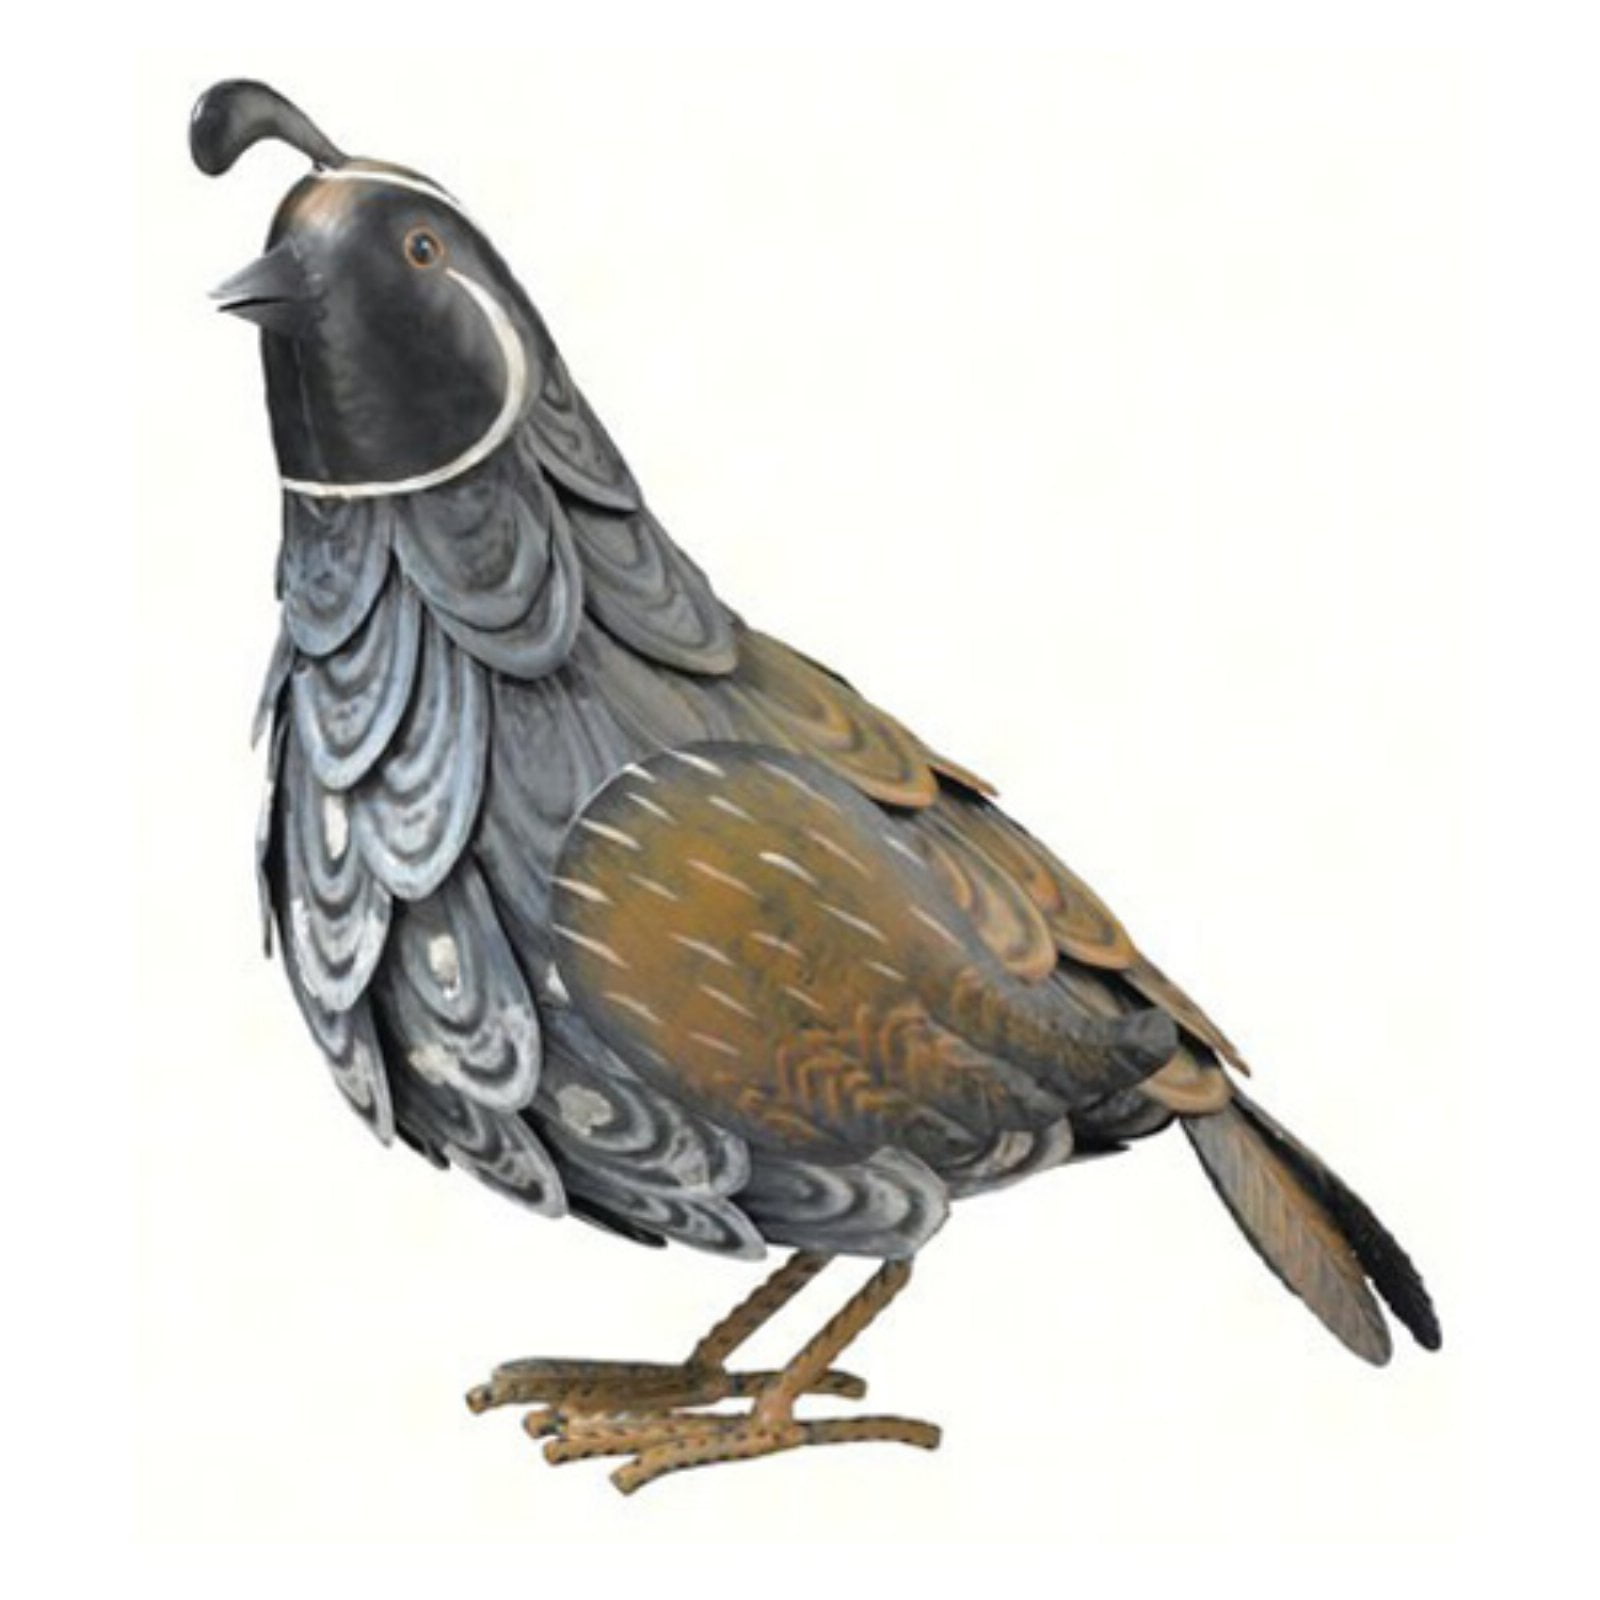 Forms birds. Металлическая птичка. Стальная птица. Птица из металла арт. Декоративная птица из листового металла.